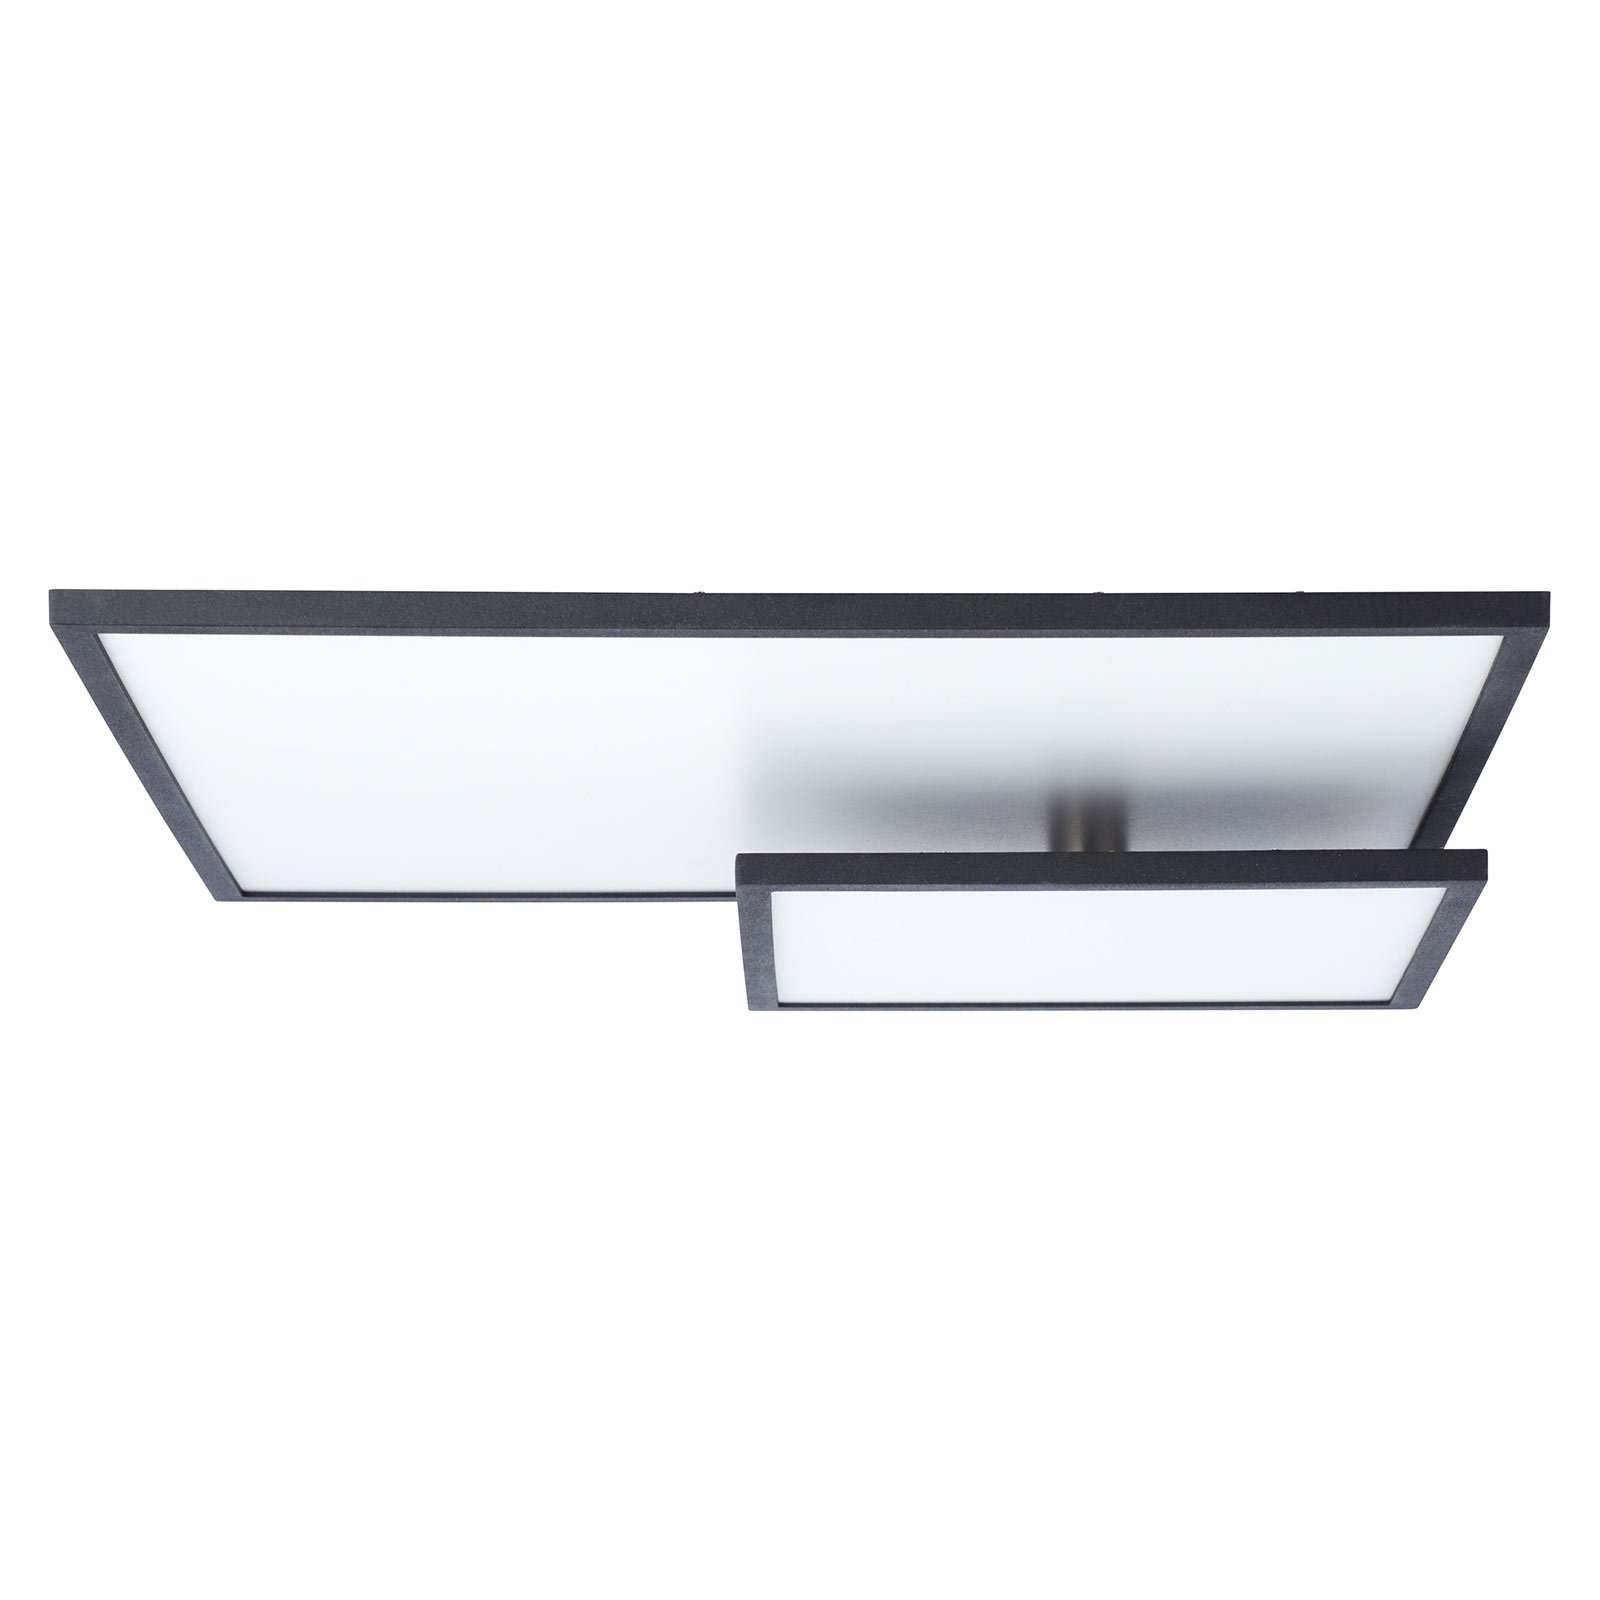 LED-Deckenlampe Bility, Länge 62 cm Rahmen schwarz